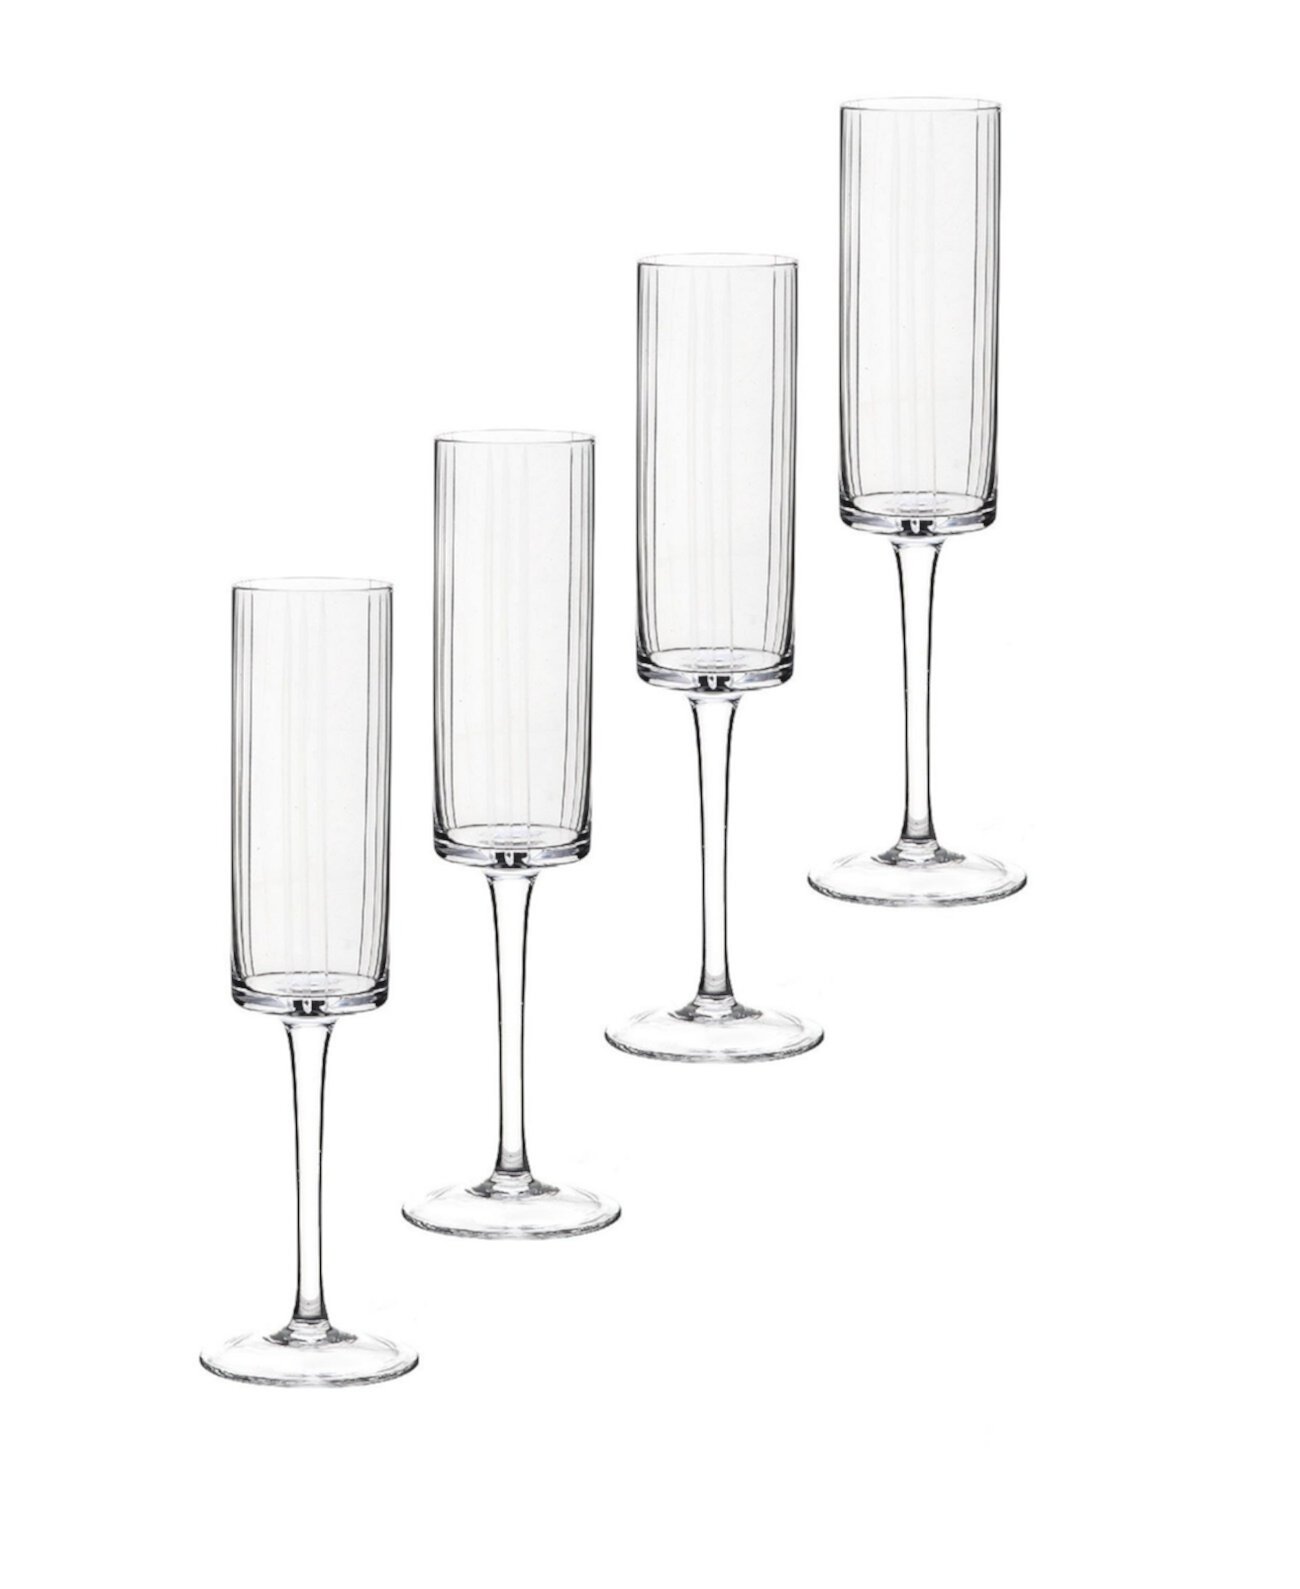 Хрустальные бокалы Trilogy Flute, набор из 4 шт. Qualia Glass